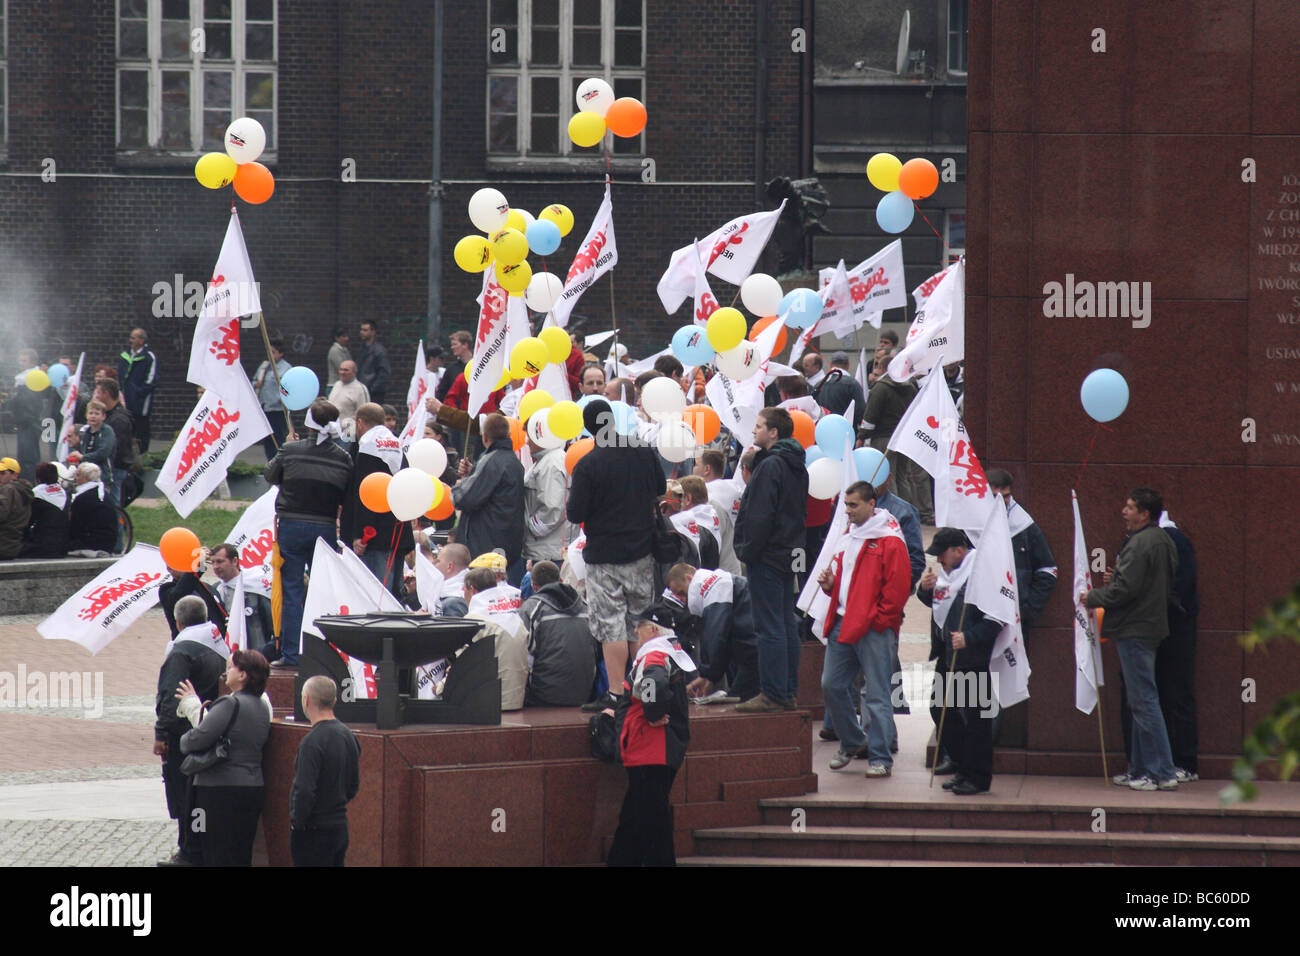 20e anniversaire de la première des élections libres en Pologne. Manifestation de solidarité à Katowice en Pologne. Banque D'Images